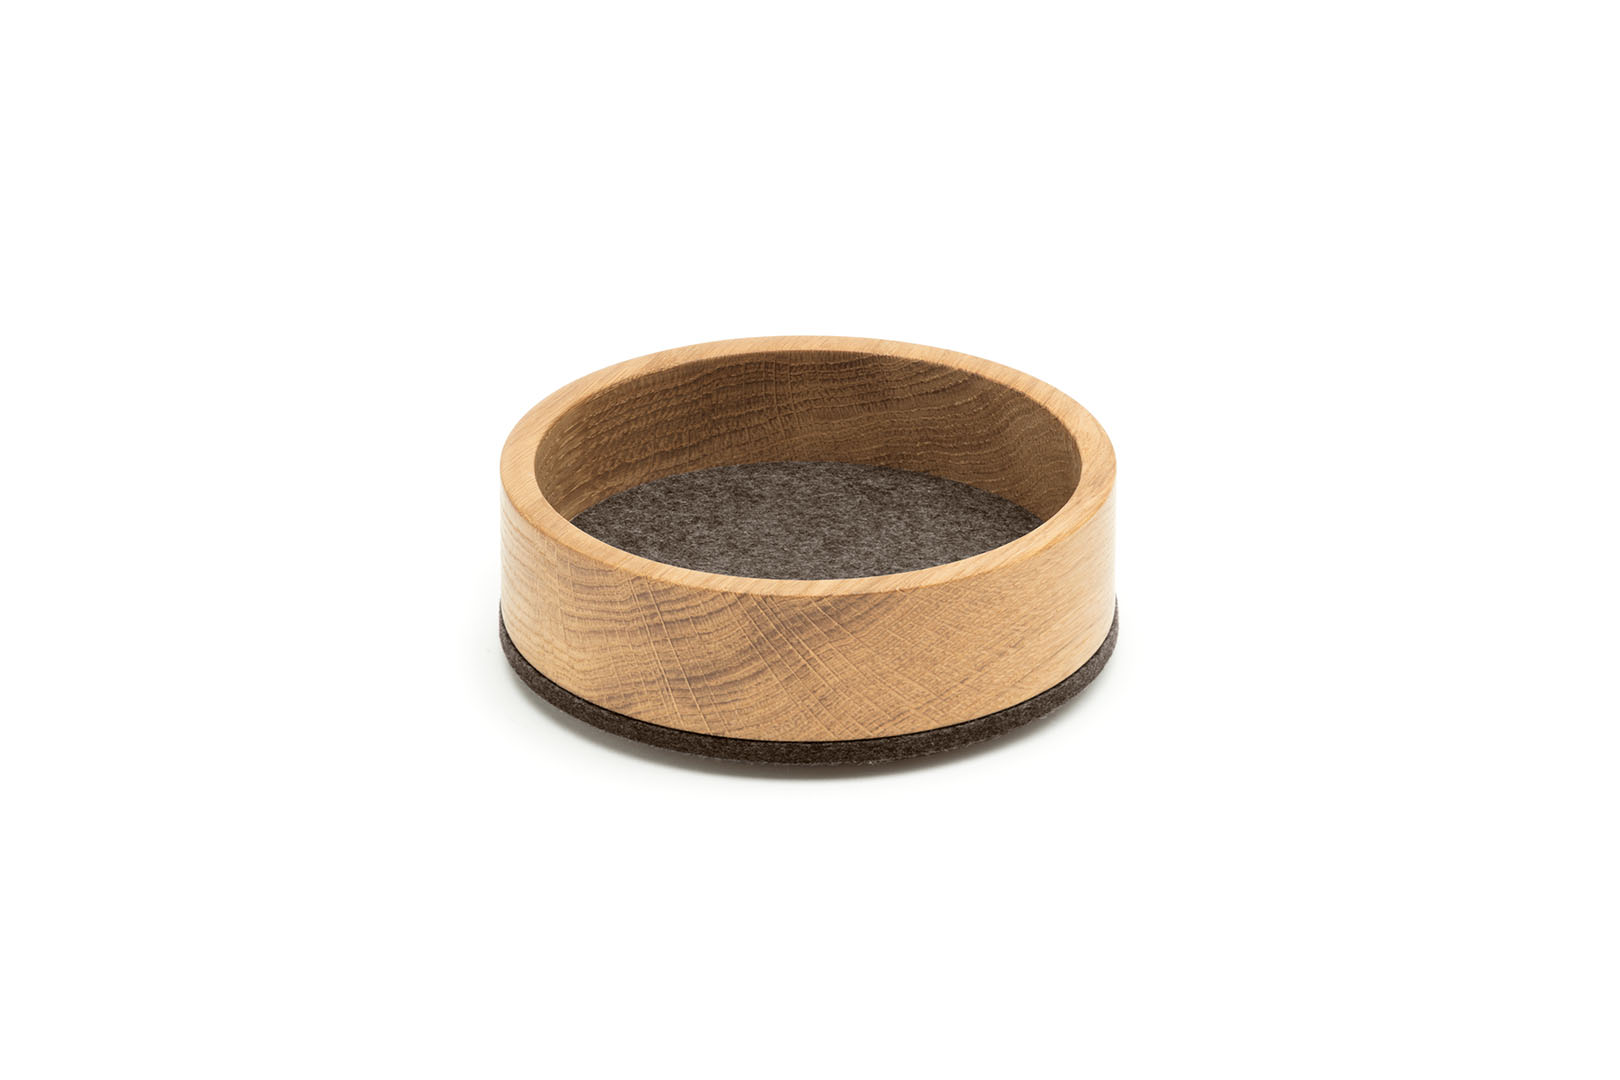 Dein Bowl/ Tray rund (Ø 13,5 cm) in der Farbe "Pepper"